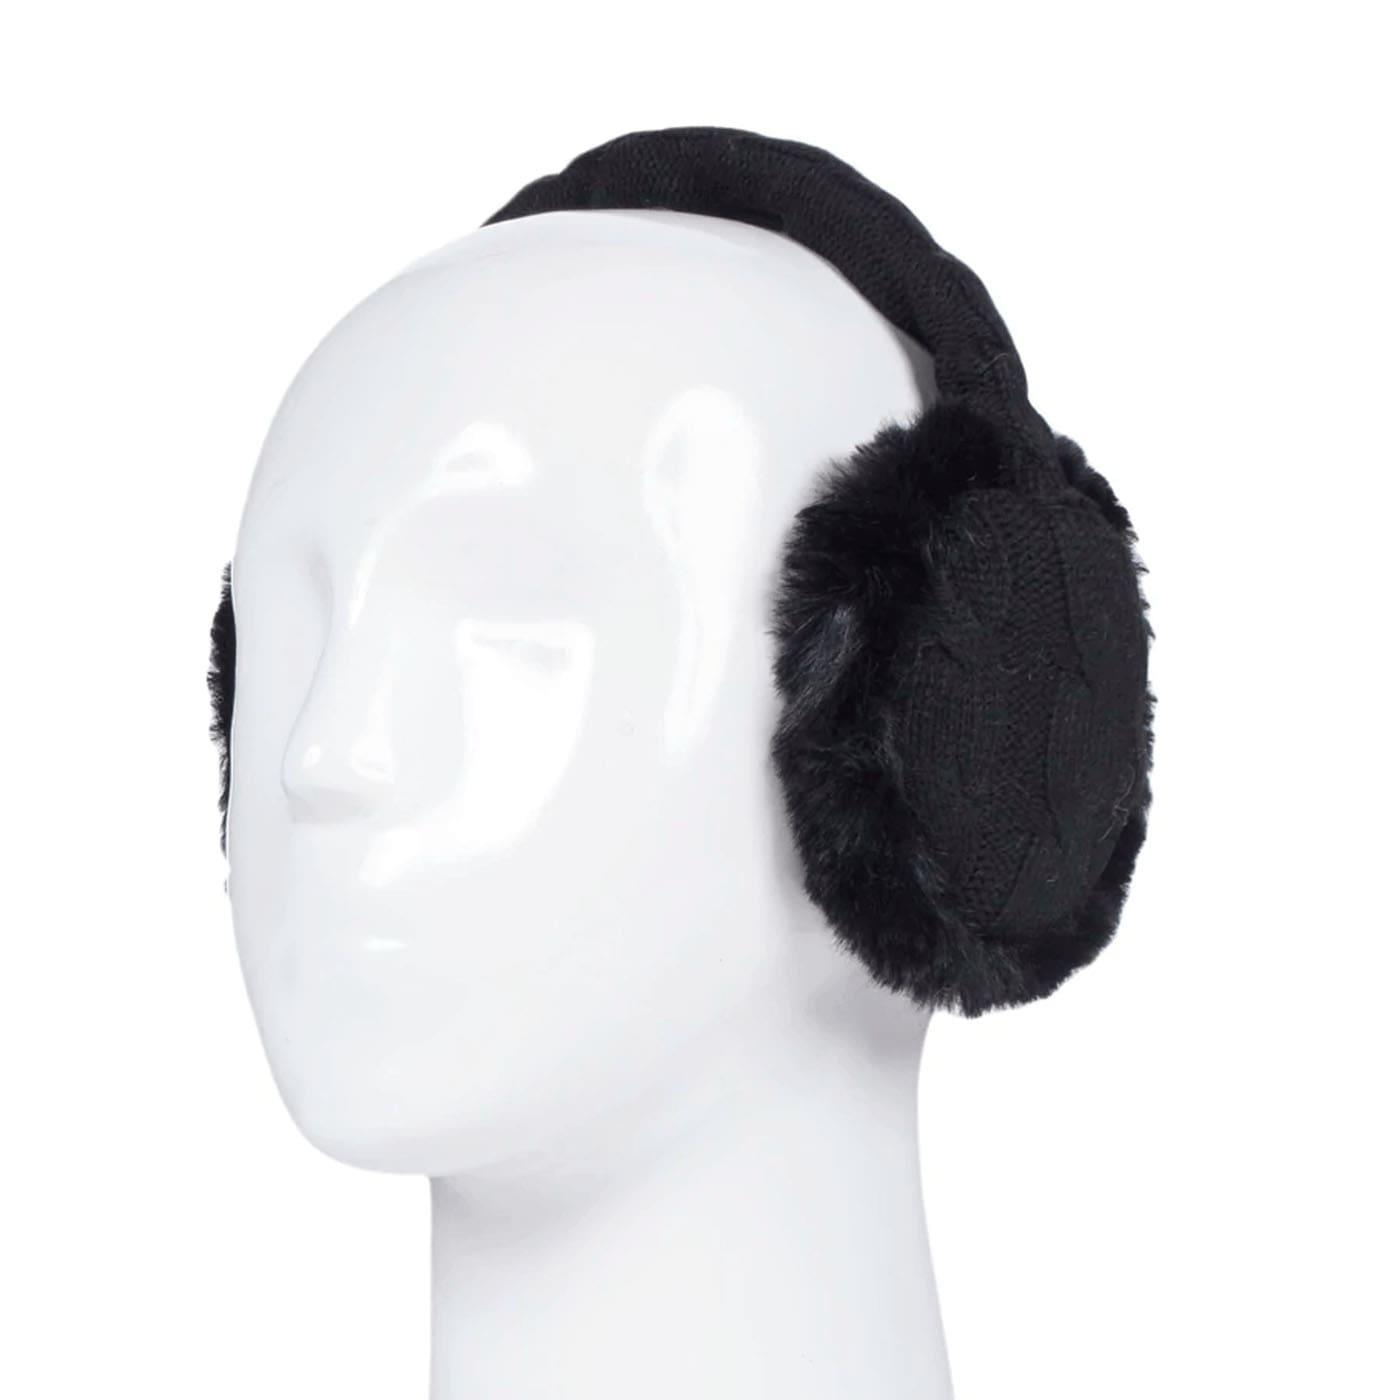 protetor térmico de ouvido com haste modular e regulável